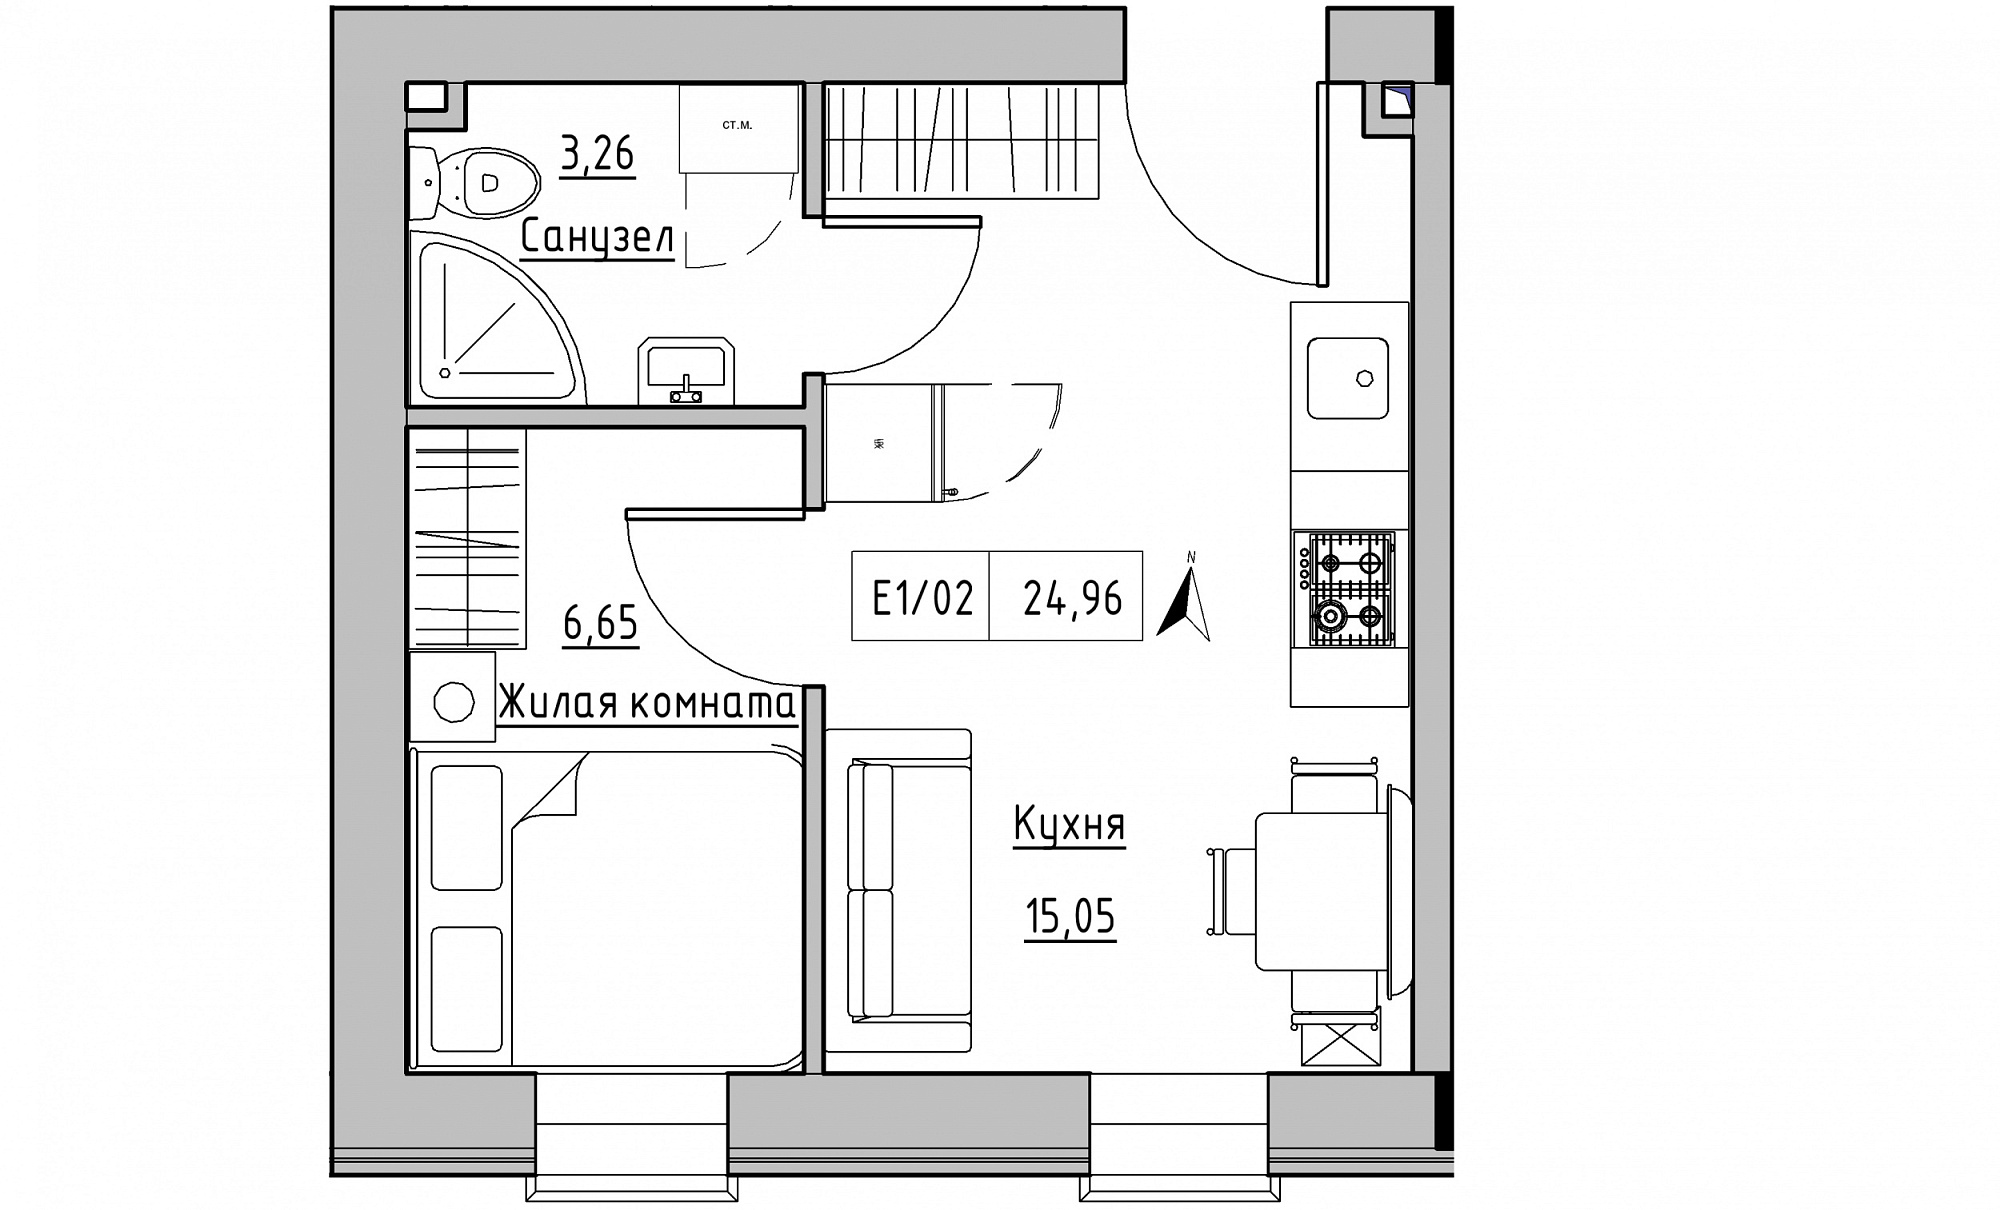 Планування 1-к квартира площею 24.96м2, KS-015-03/0012.